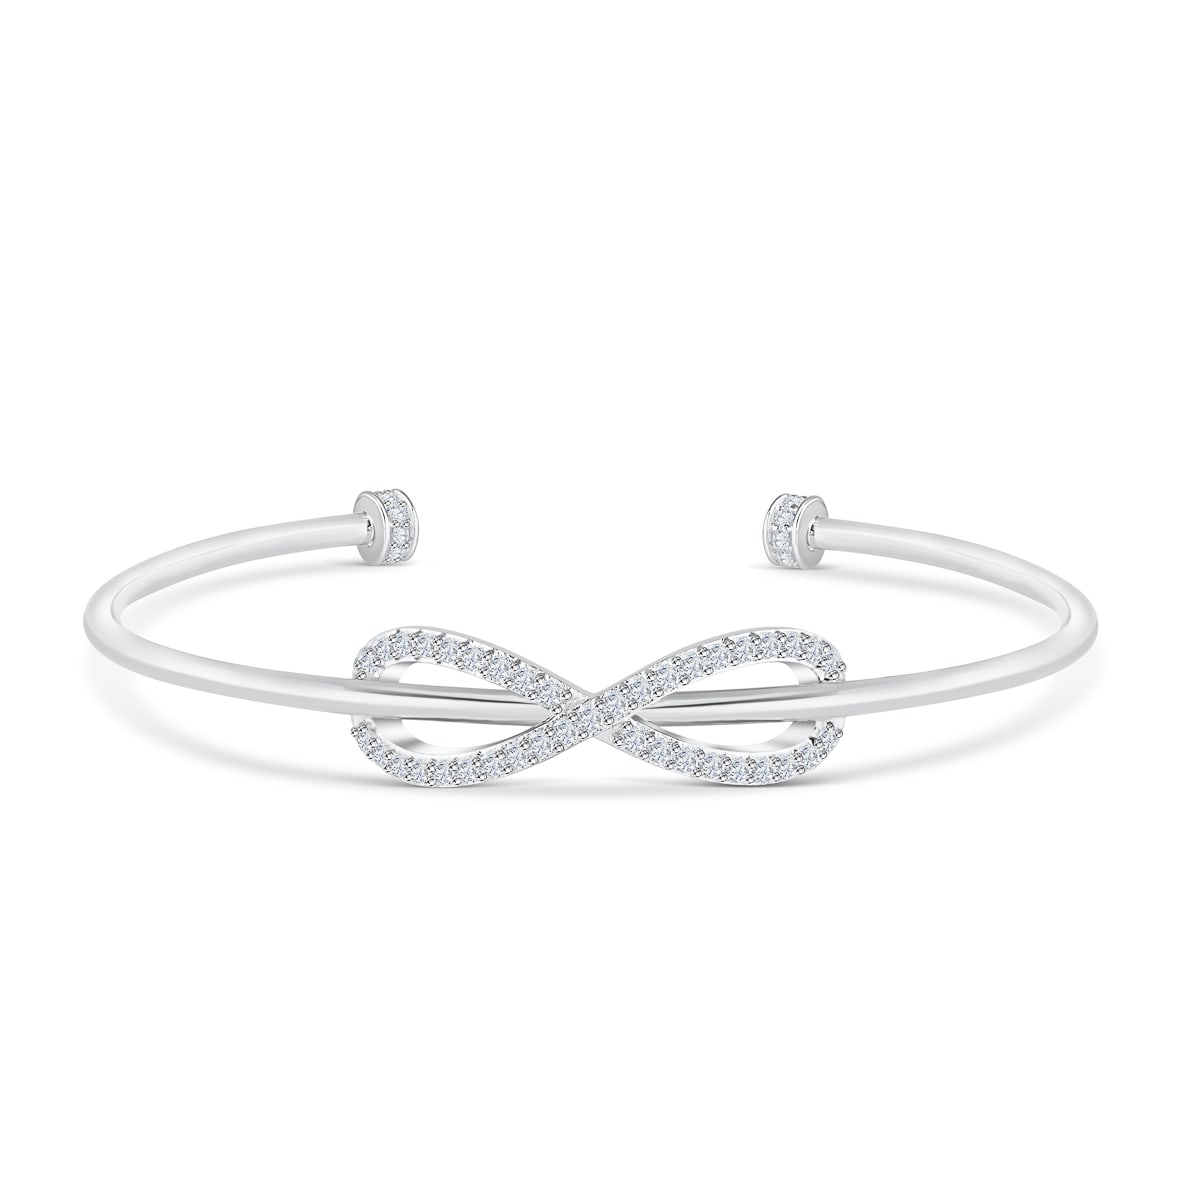 the athena silver cuff bracelet